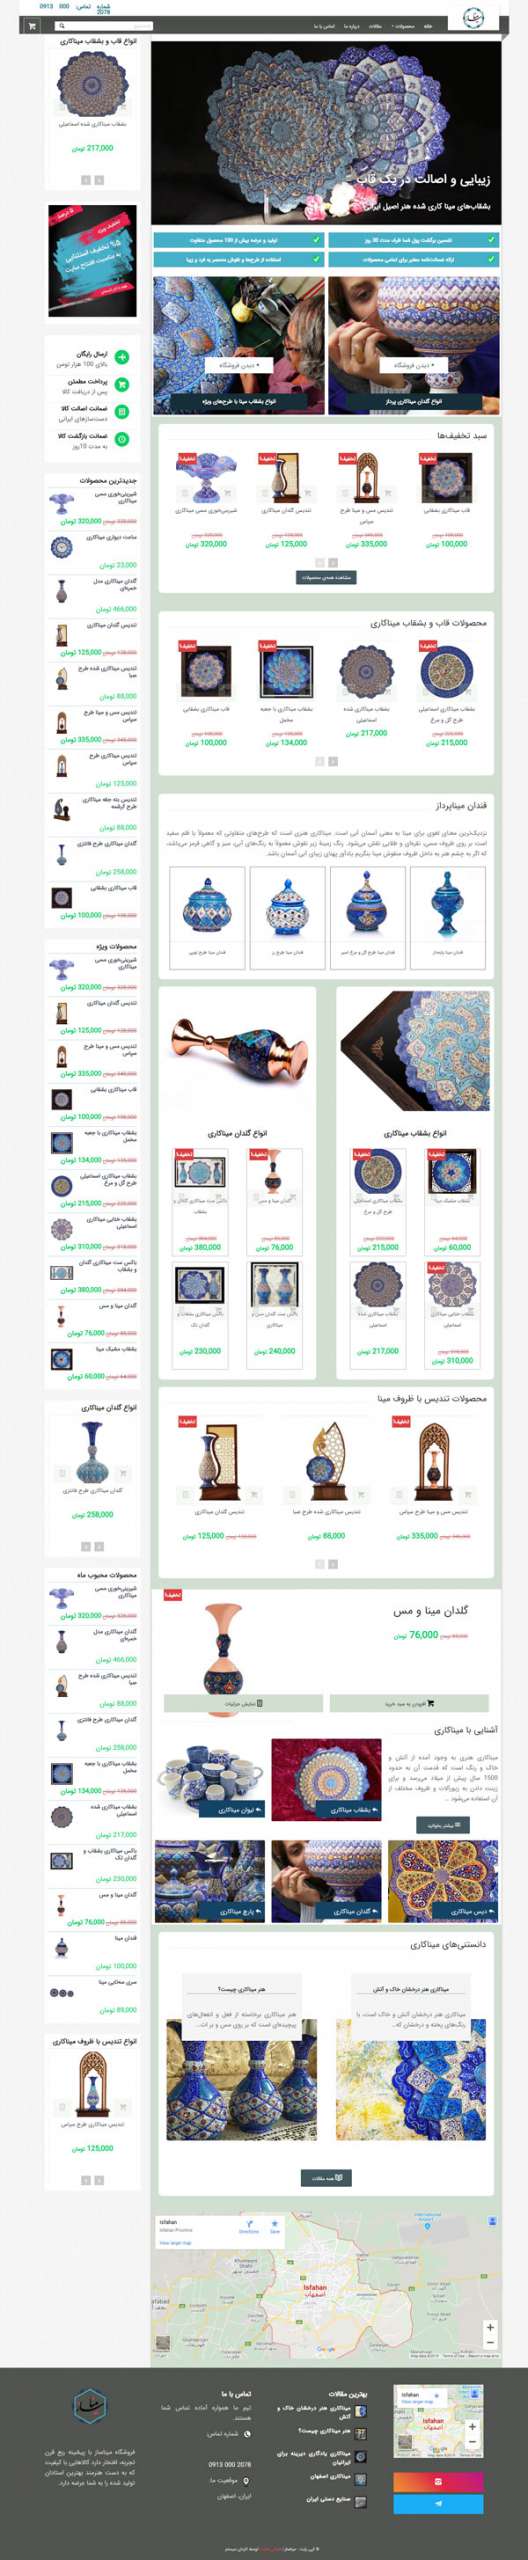 طراحی سایت میناساز | فروش محصولات هنری و مینا